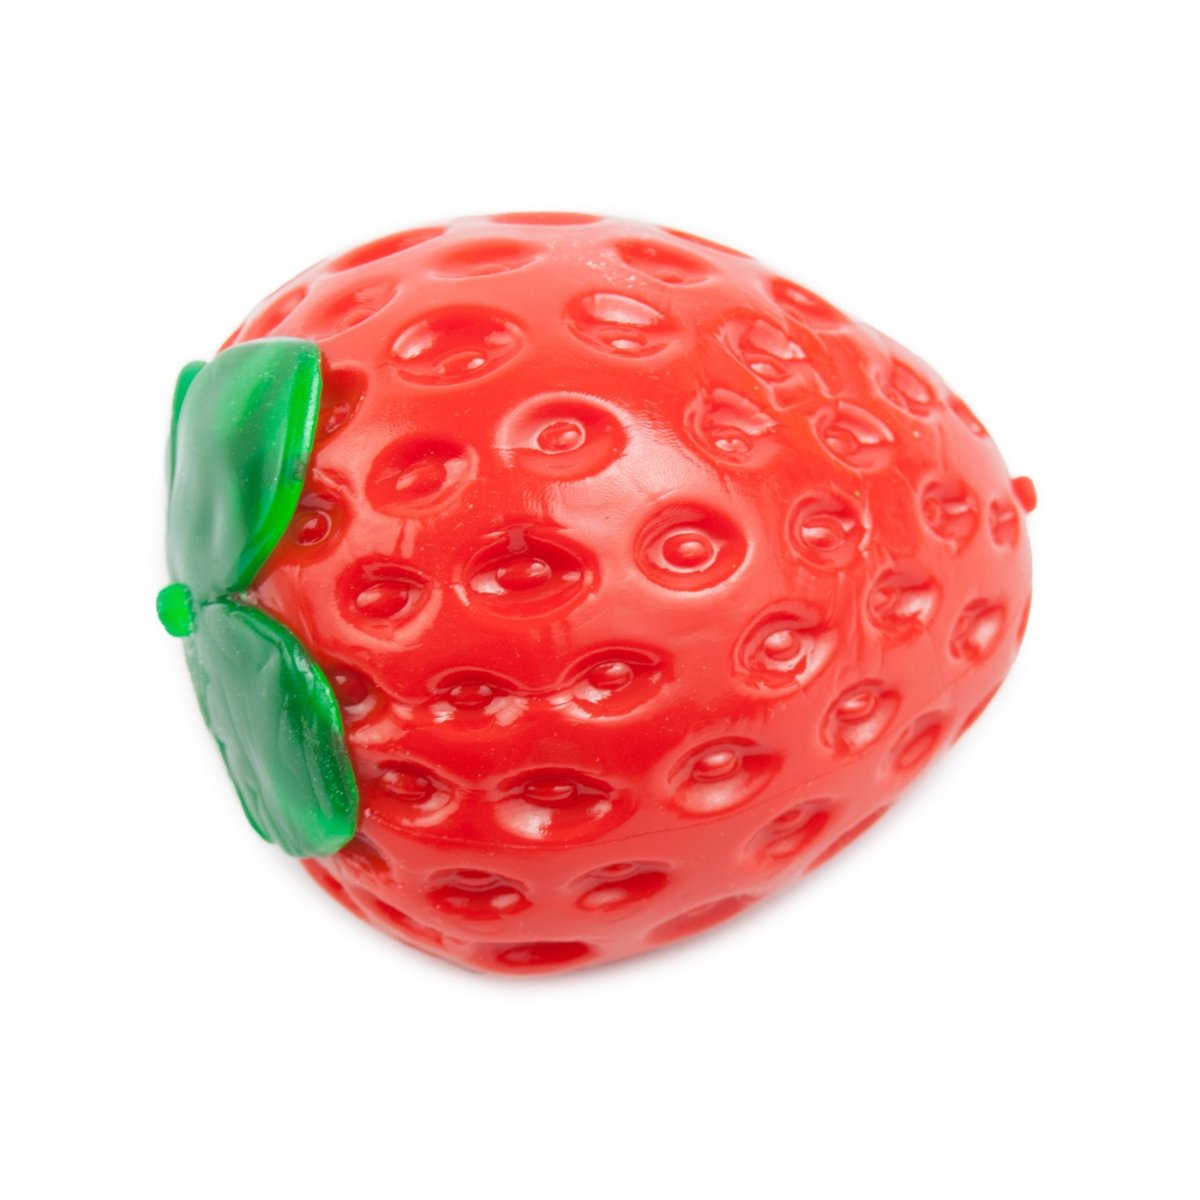 Truskawka Antystresowa 9cm Strawberry Stress Toy